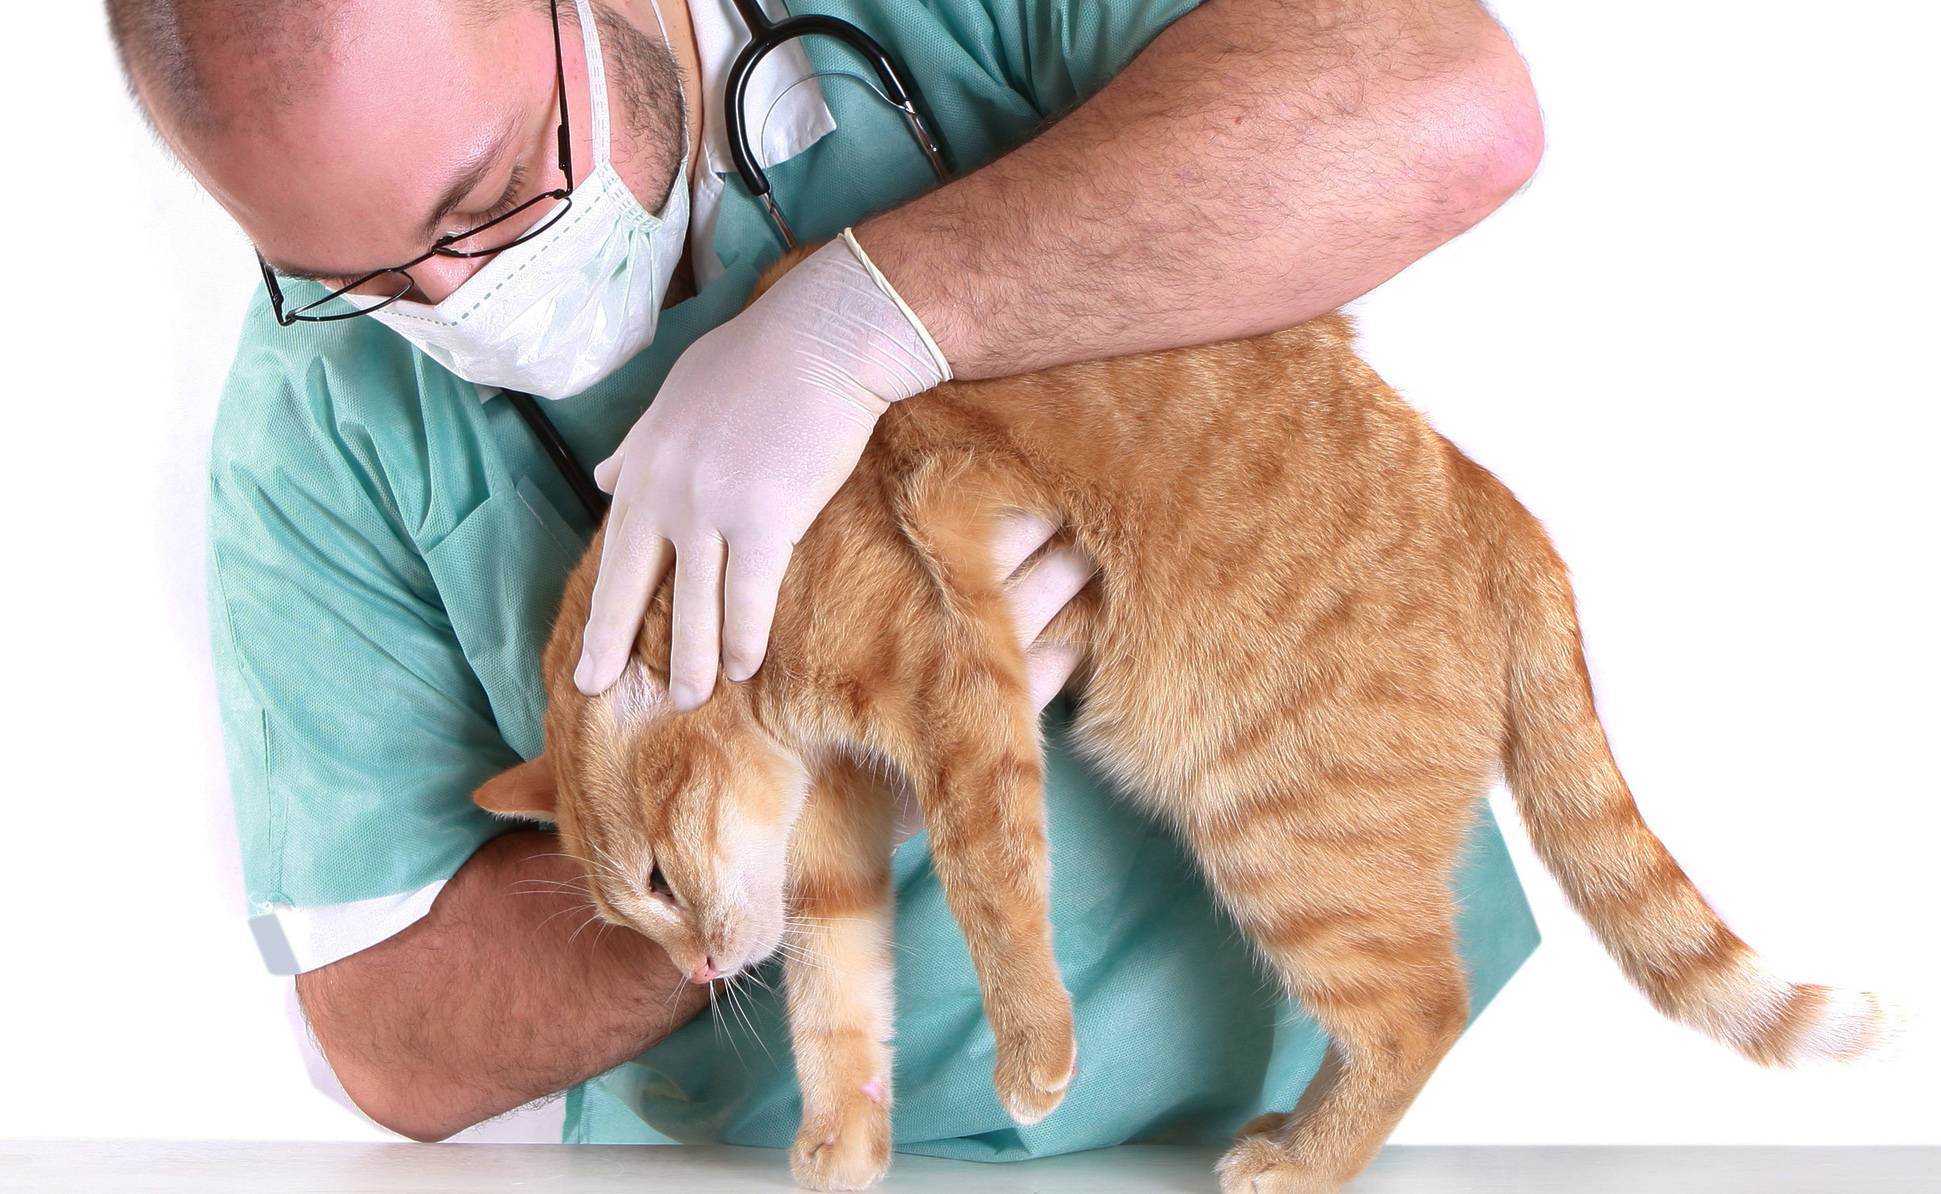 Как проверить кошку на токсоплазмоз?